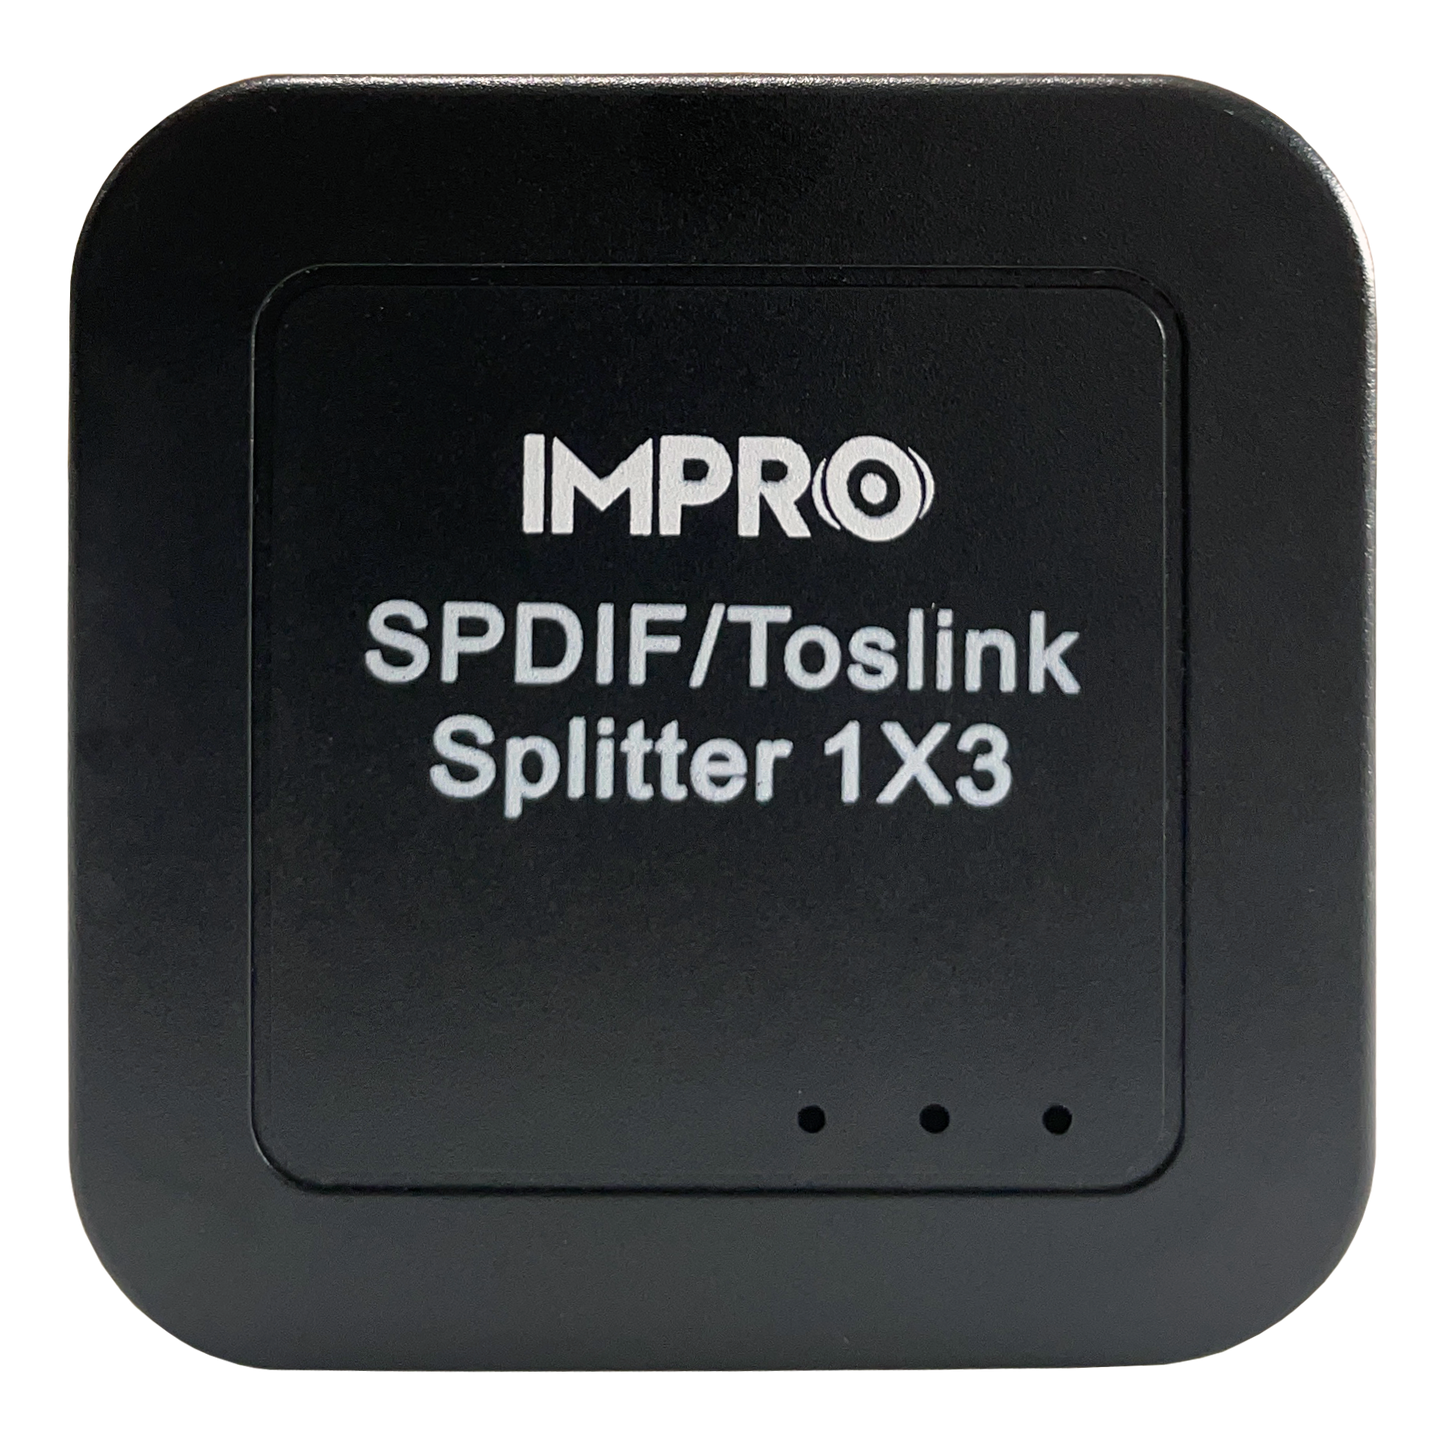 ImPro AC-88 SPDIF /Toslink Splitter 1X3